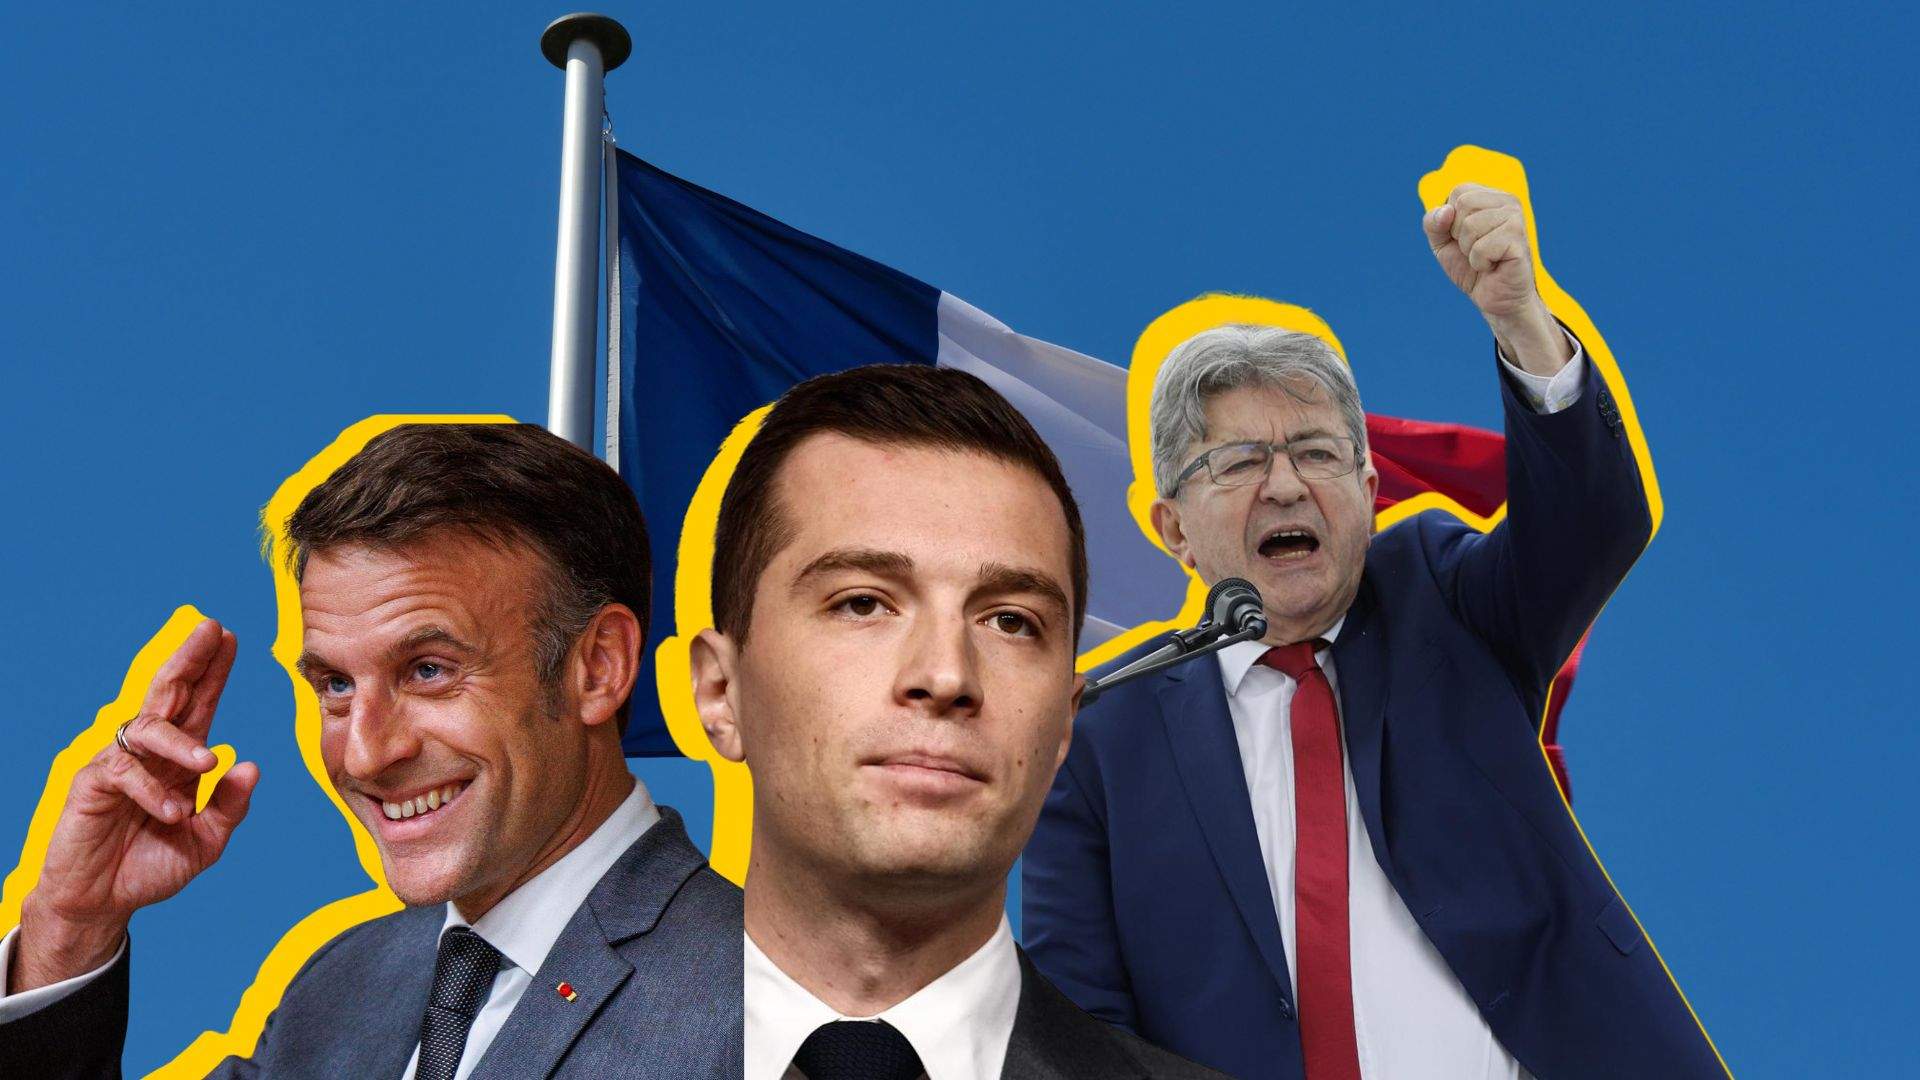 Los extremos se disputan las elecciones a la Asamblea Nacional: ¿el peor panorama para Francia?